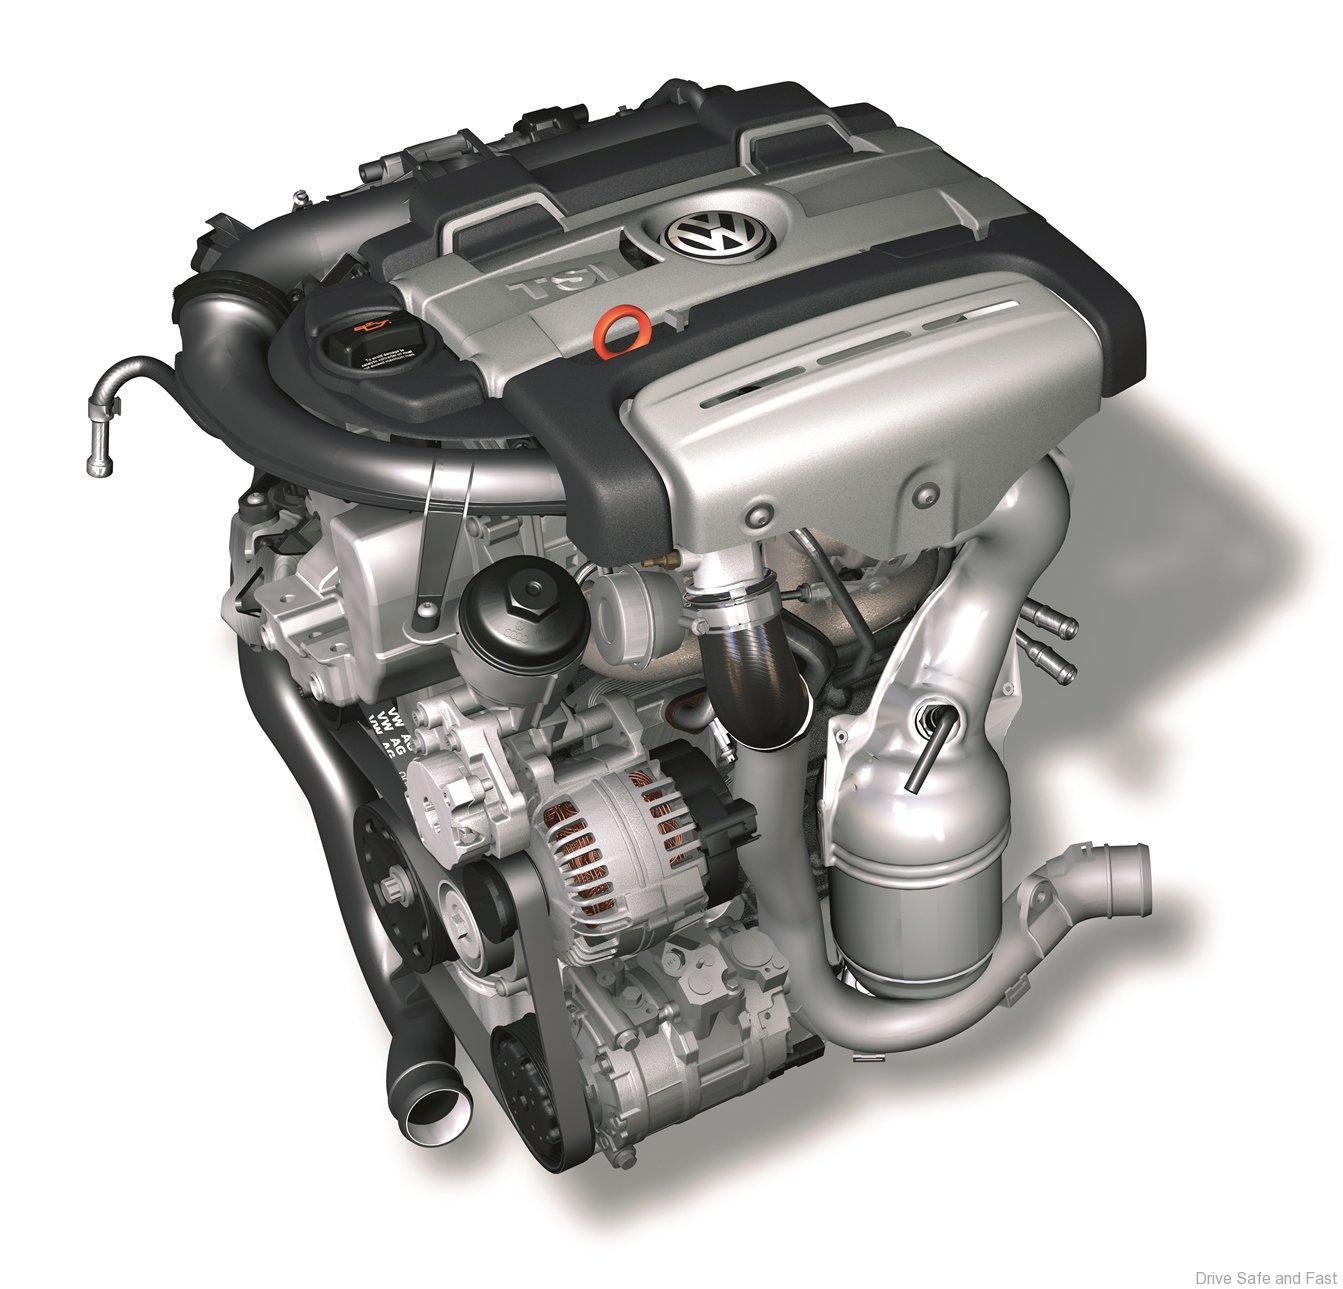 Tsi двигатель ремонт. Мотор 1.4 TSI 150 Л.С. Двигатель Volkswagen 1,4 TSI. Мотор CTHA 1.4 TSI. Двигатель Volkswagen Tiguan 1.4 TSI.